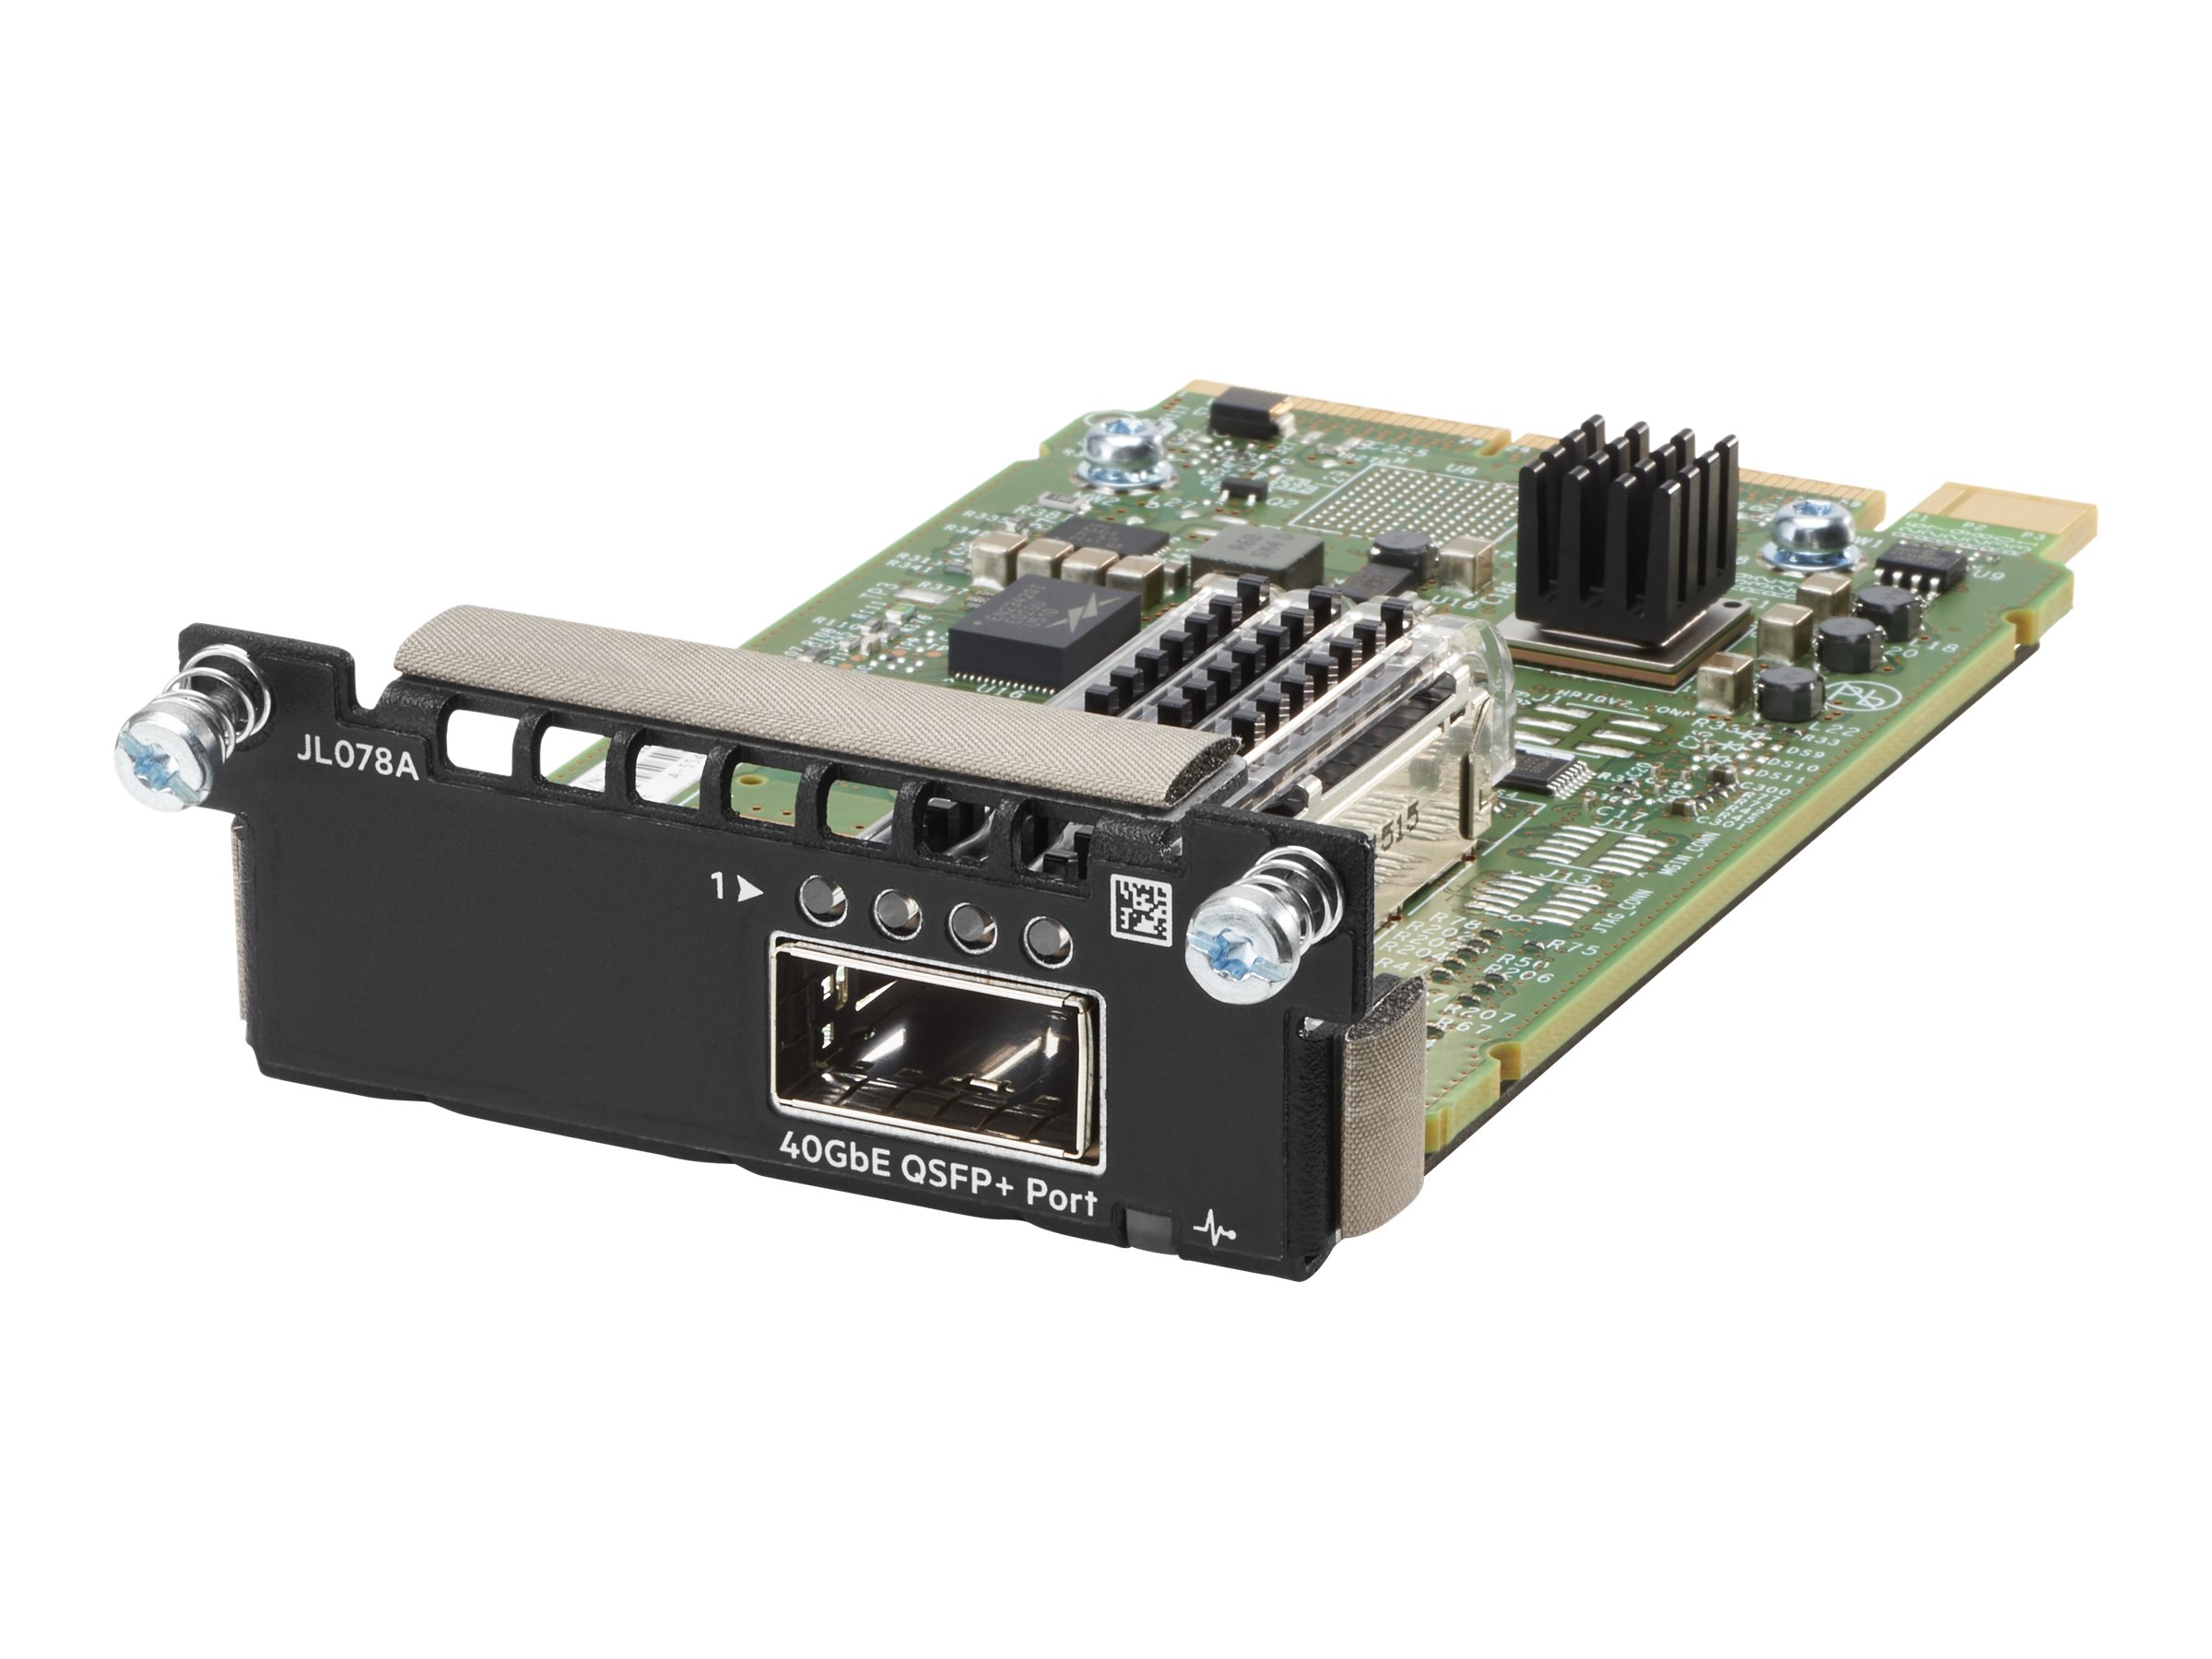 HPE Aruba 3810M 1QSFP+ 40GbE Module - Zubehörkit für Netzwerkeinheit - für HPE Aruba 2930M 24 Smart Rate POE+ 1-Slot, 3810M 16SFP+ 2-slot Switch